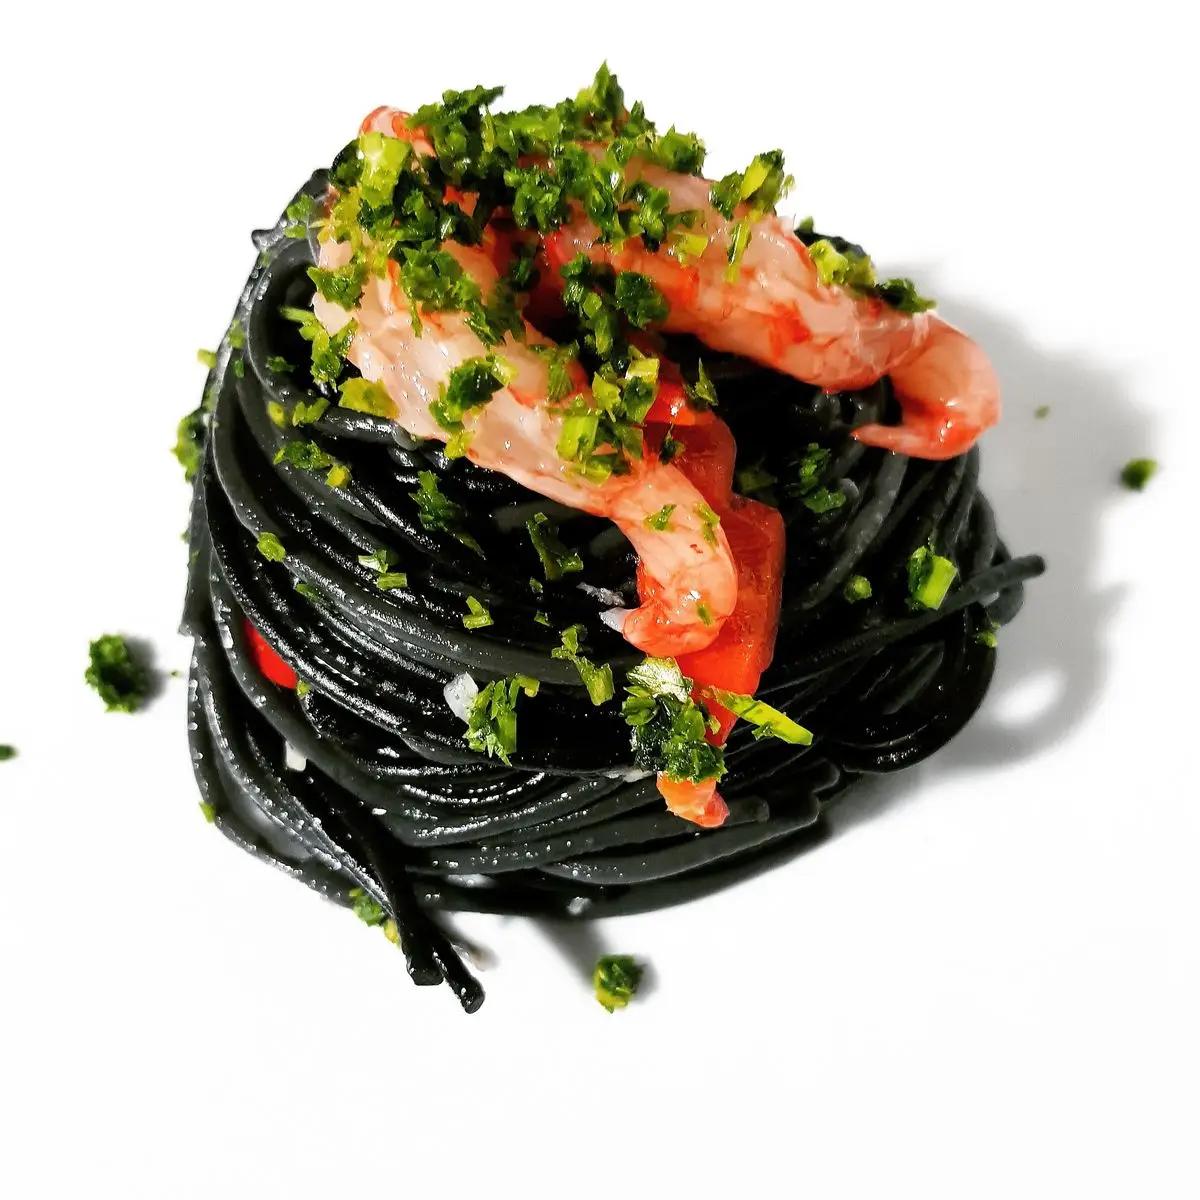 Ricetta Spaghetti neri, aglio, olio, peperoncino e prezzemolo con crudo di gambero rosso di FrancescaCurreli